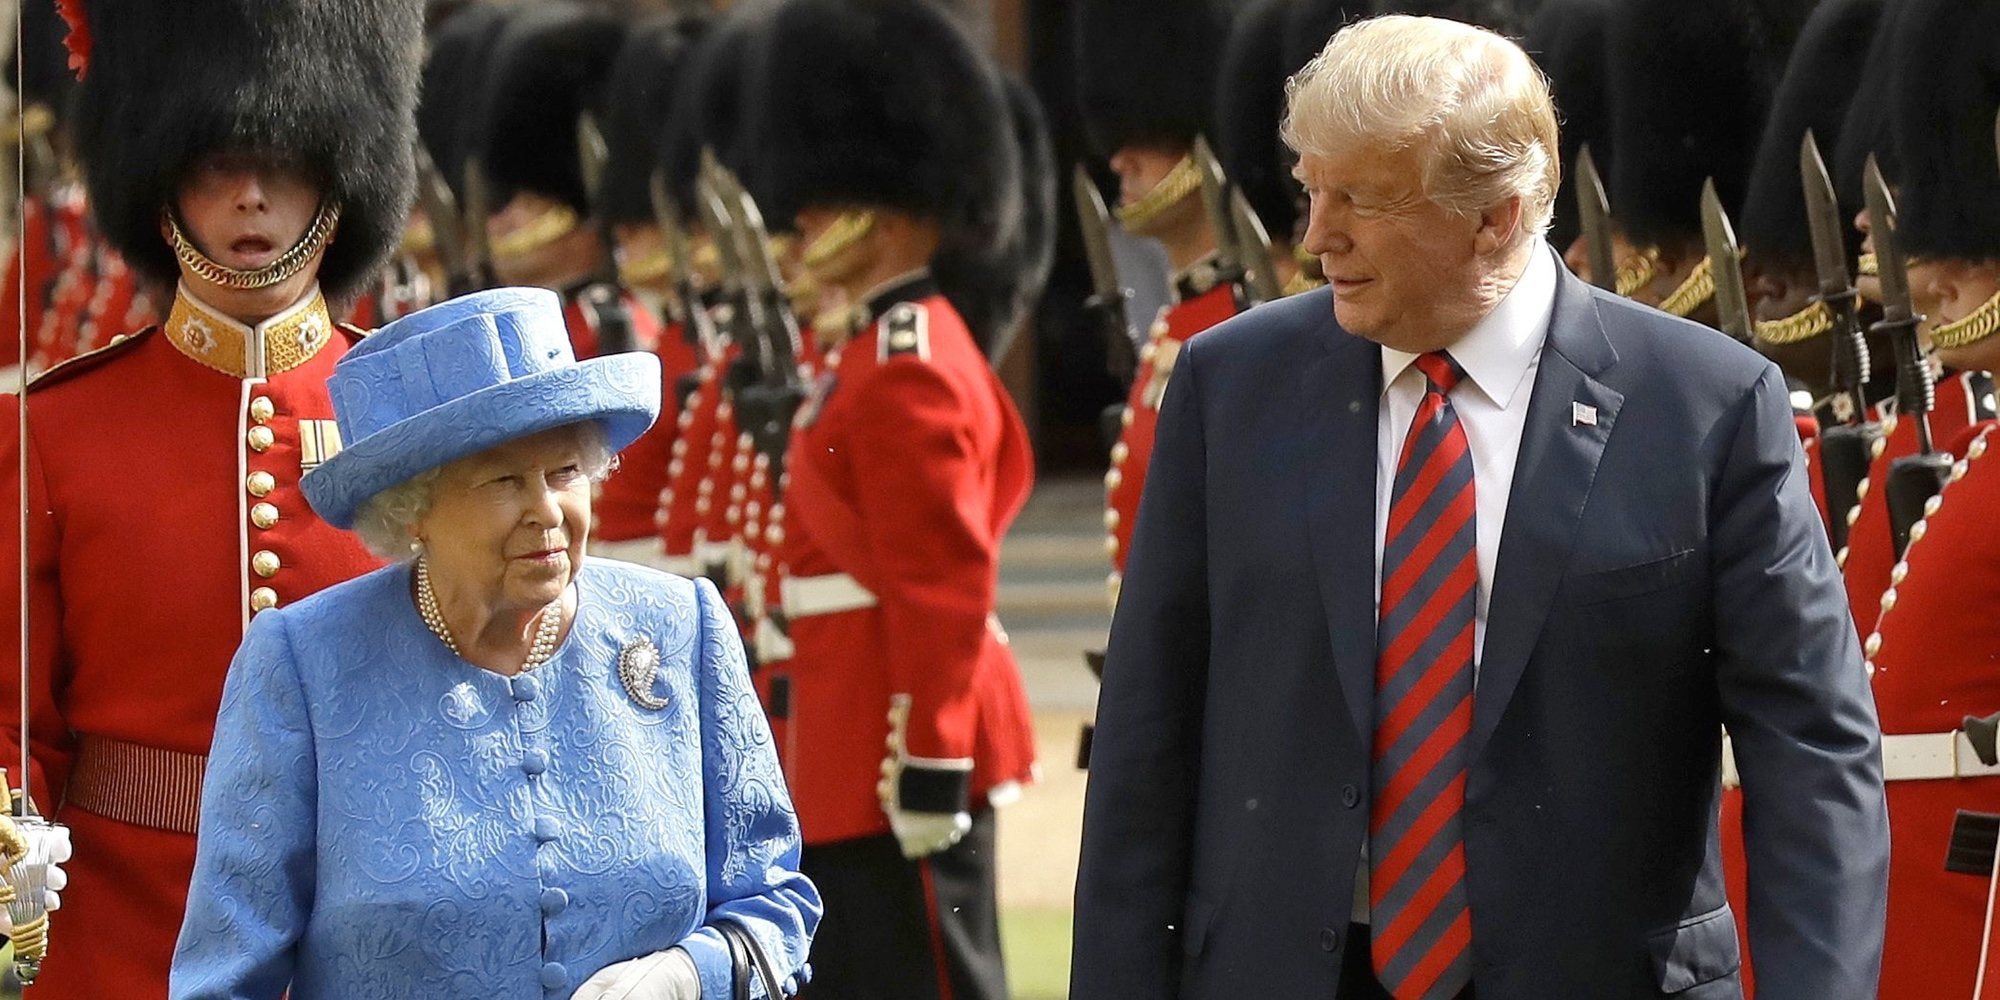 De la metedura de pata de Donald Trump con la Reina Isabel a la pillada de James Mountbatten Windsor al volante